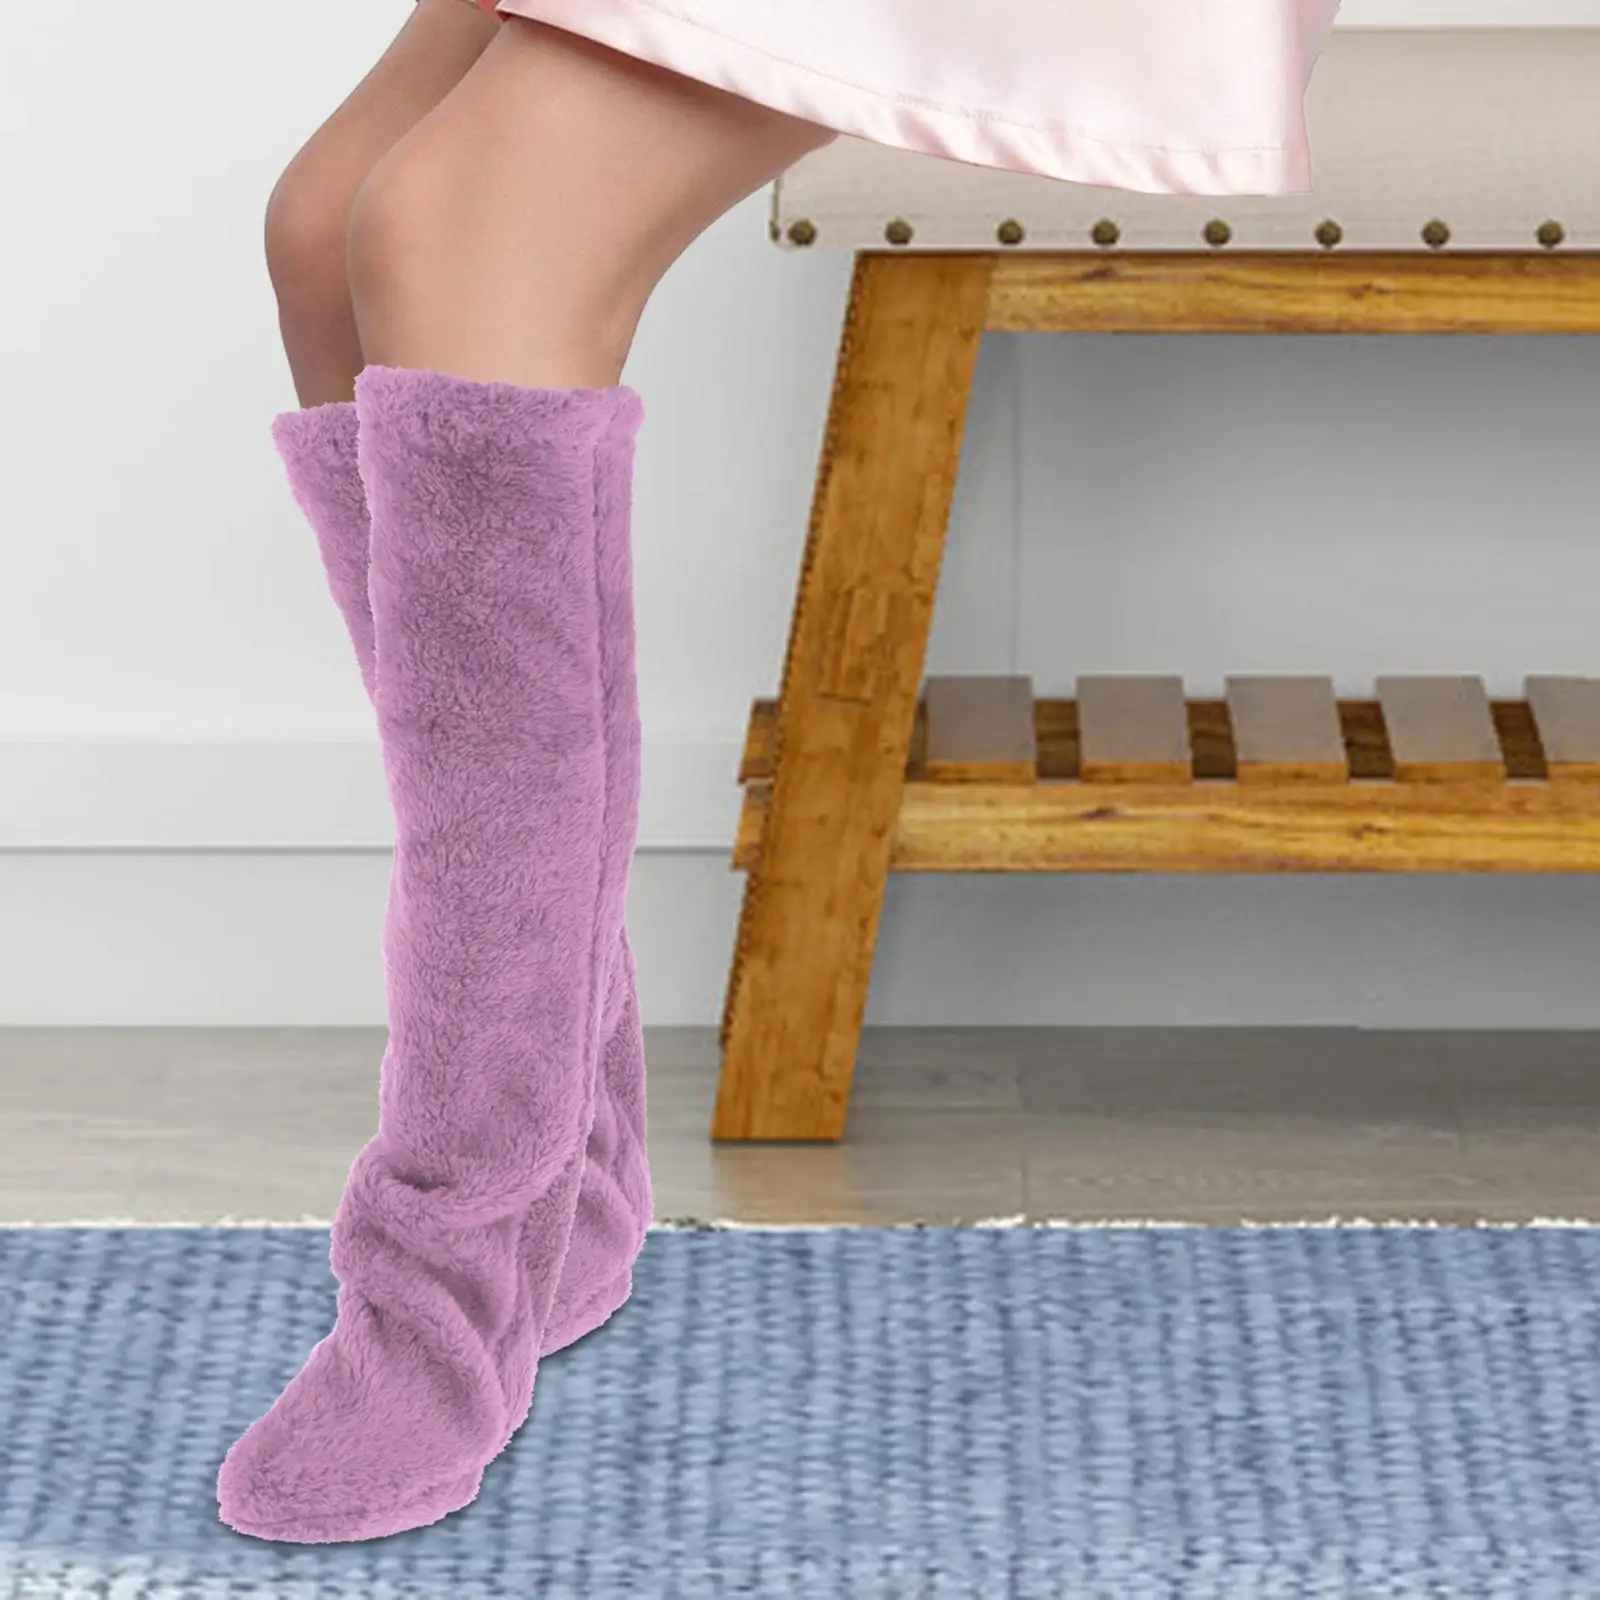 Thigh High Socks Boot Socks Stocking Long Foot Wrap Plush Leg Warmers Slipper Stockings for Office Bedroom Living Room Girl Lady